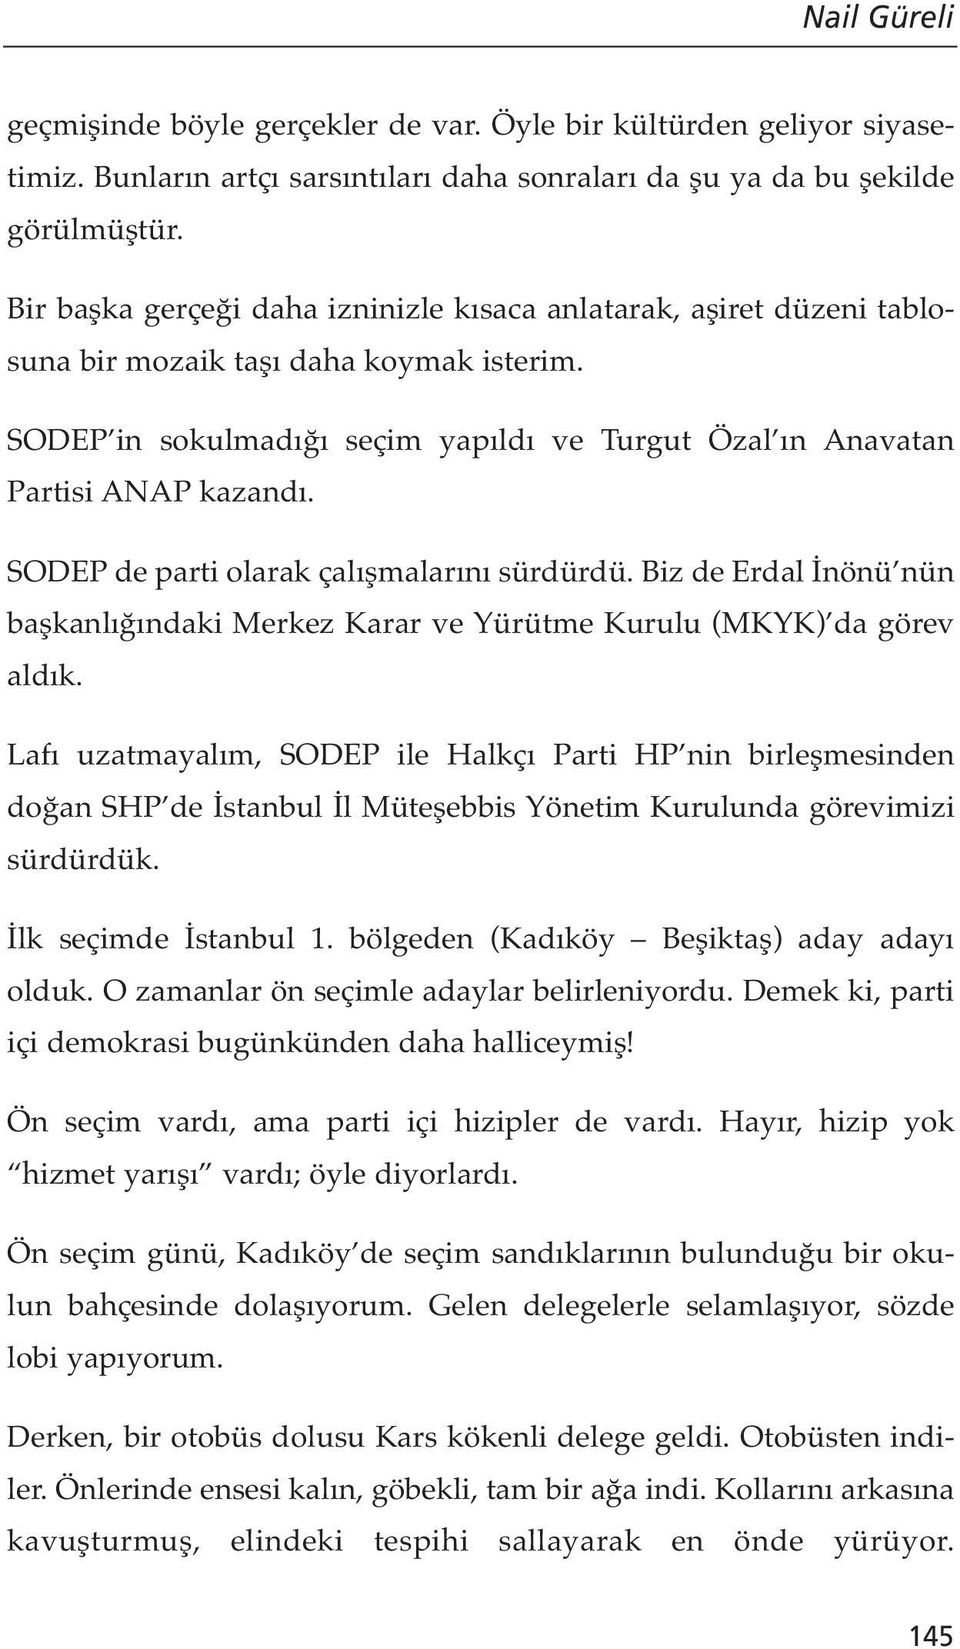 SODEP de parti olarak çalışmalarını sürdürdü. Biz de Erdal İnönü nün başkanlığındaki Merkez Karar ve Yürütme Kurulu (MKYK) da görev aldık.